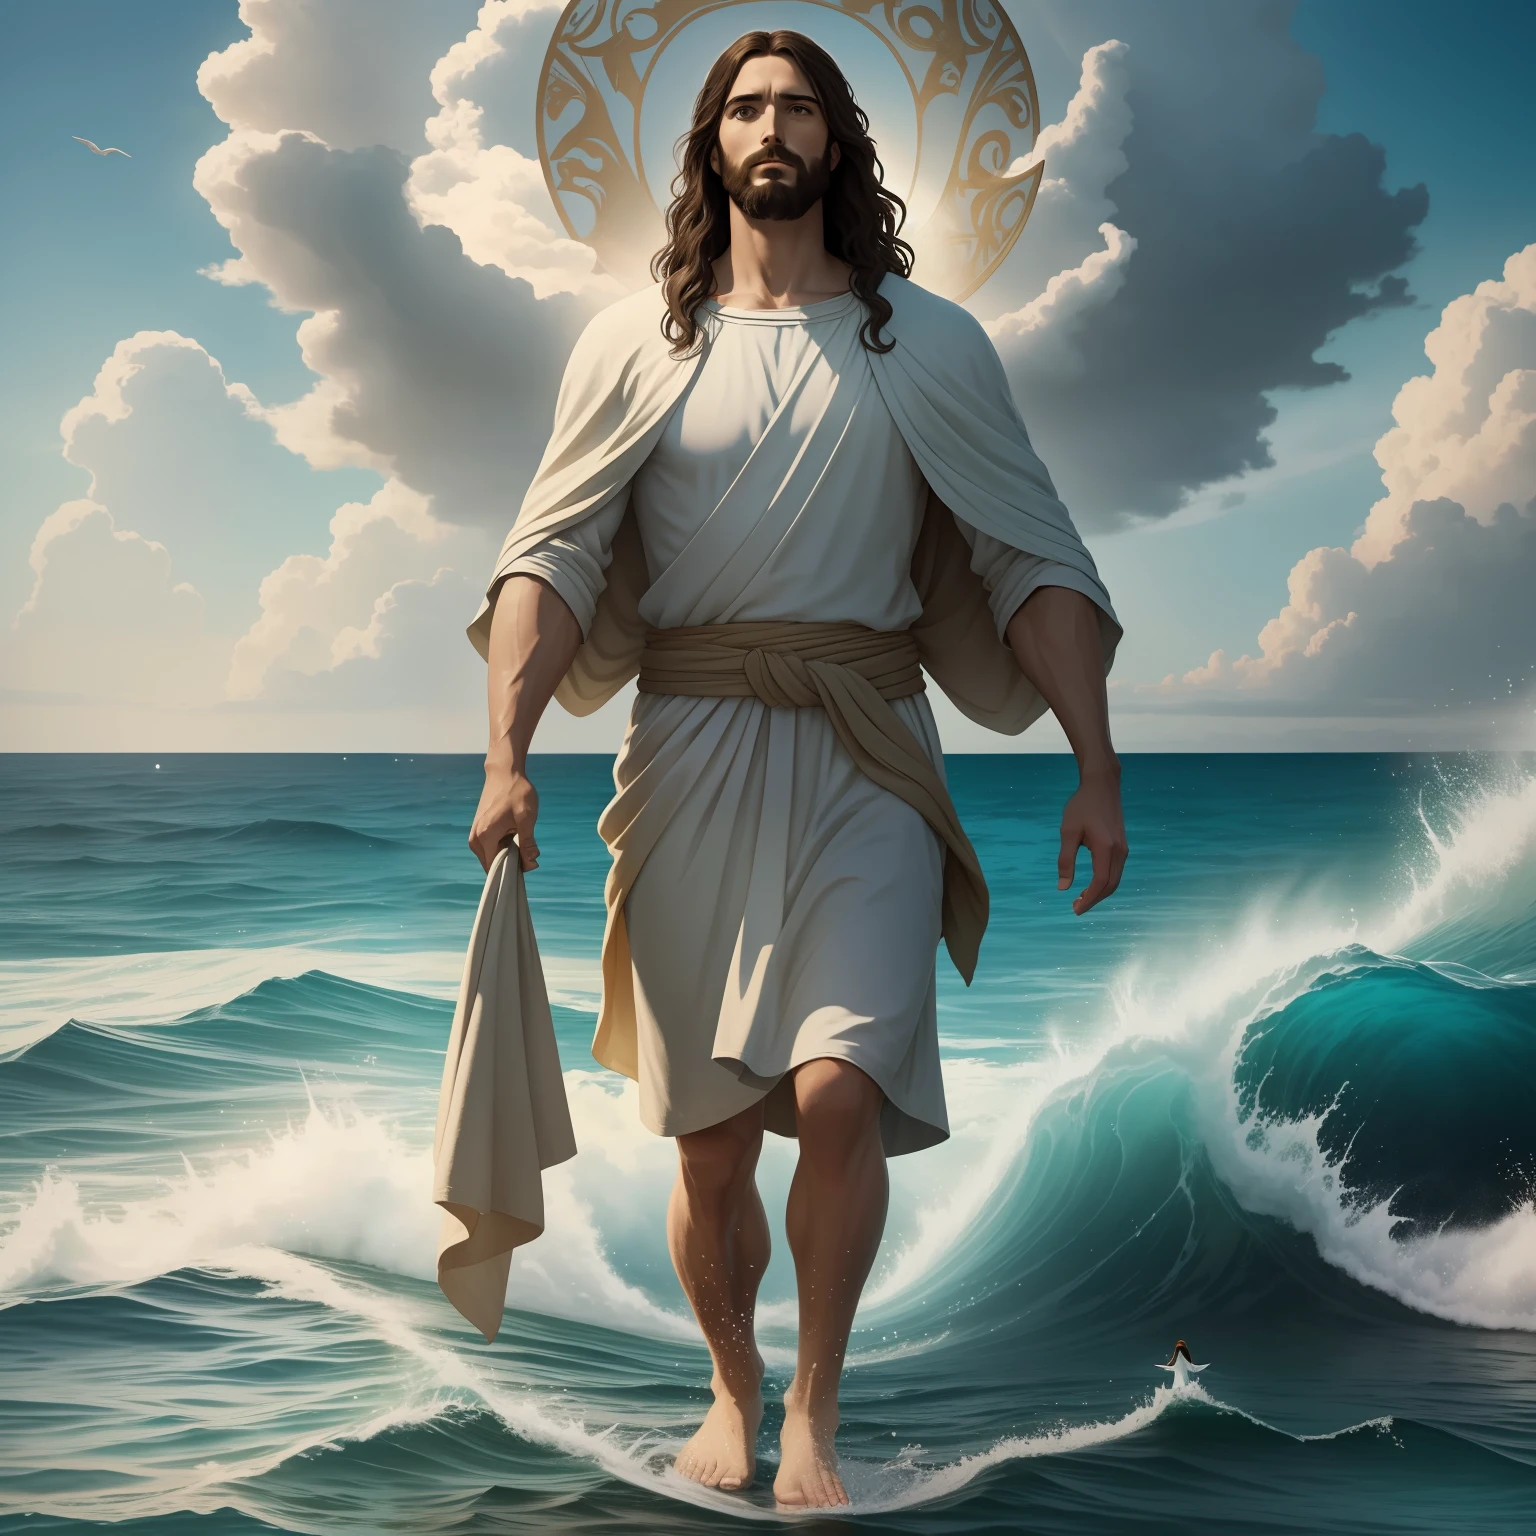 يسوع يمشي على الماء with a heaven cloud in the background, يسوع يمشي على الماء, التوضيح الكتاب المقدس, التمثيل الكتابي الملحمي, إجباره على الفرار, يخرج من المحيط, ! عقد في متناول اليد!, نعمة لمساعدة الناس, النزول, إله المحيط, تمثيل جميل, 8K ضوء البركات المشمسة, حقيقي,